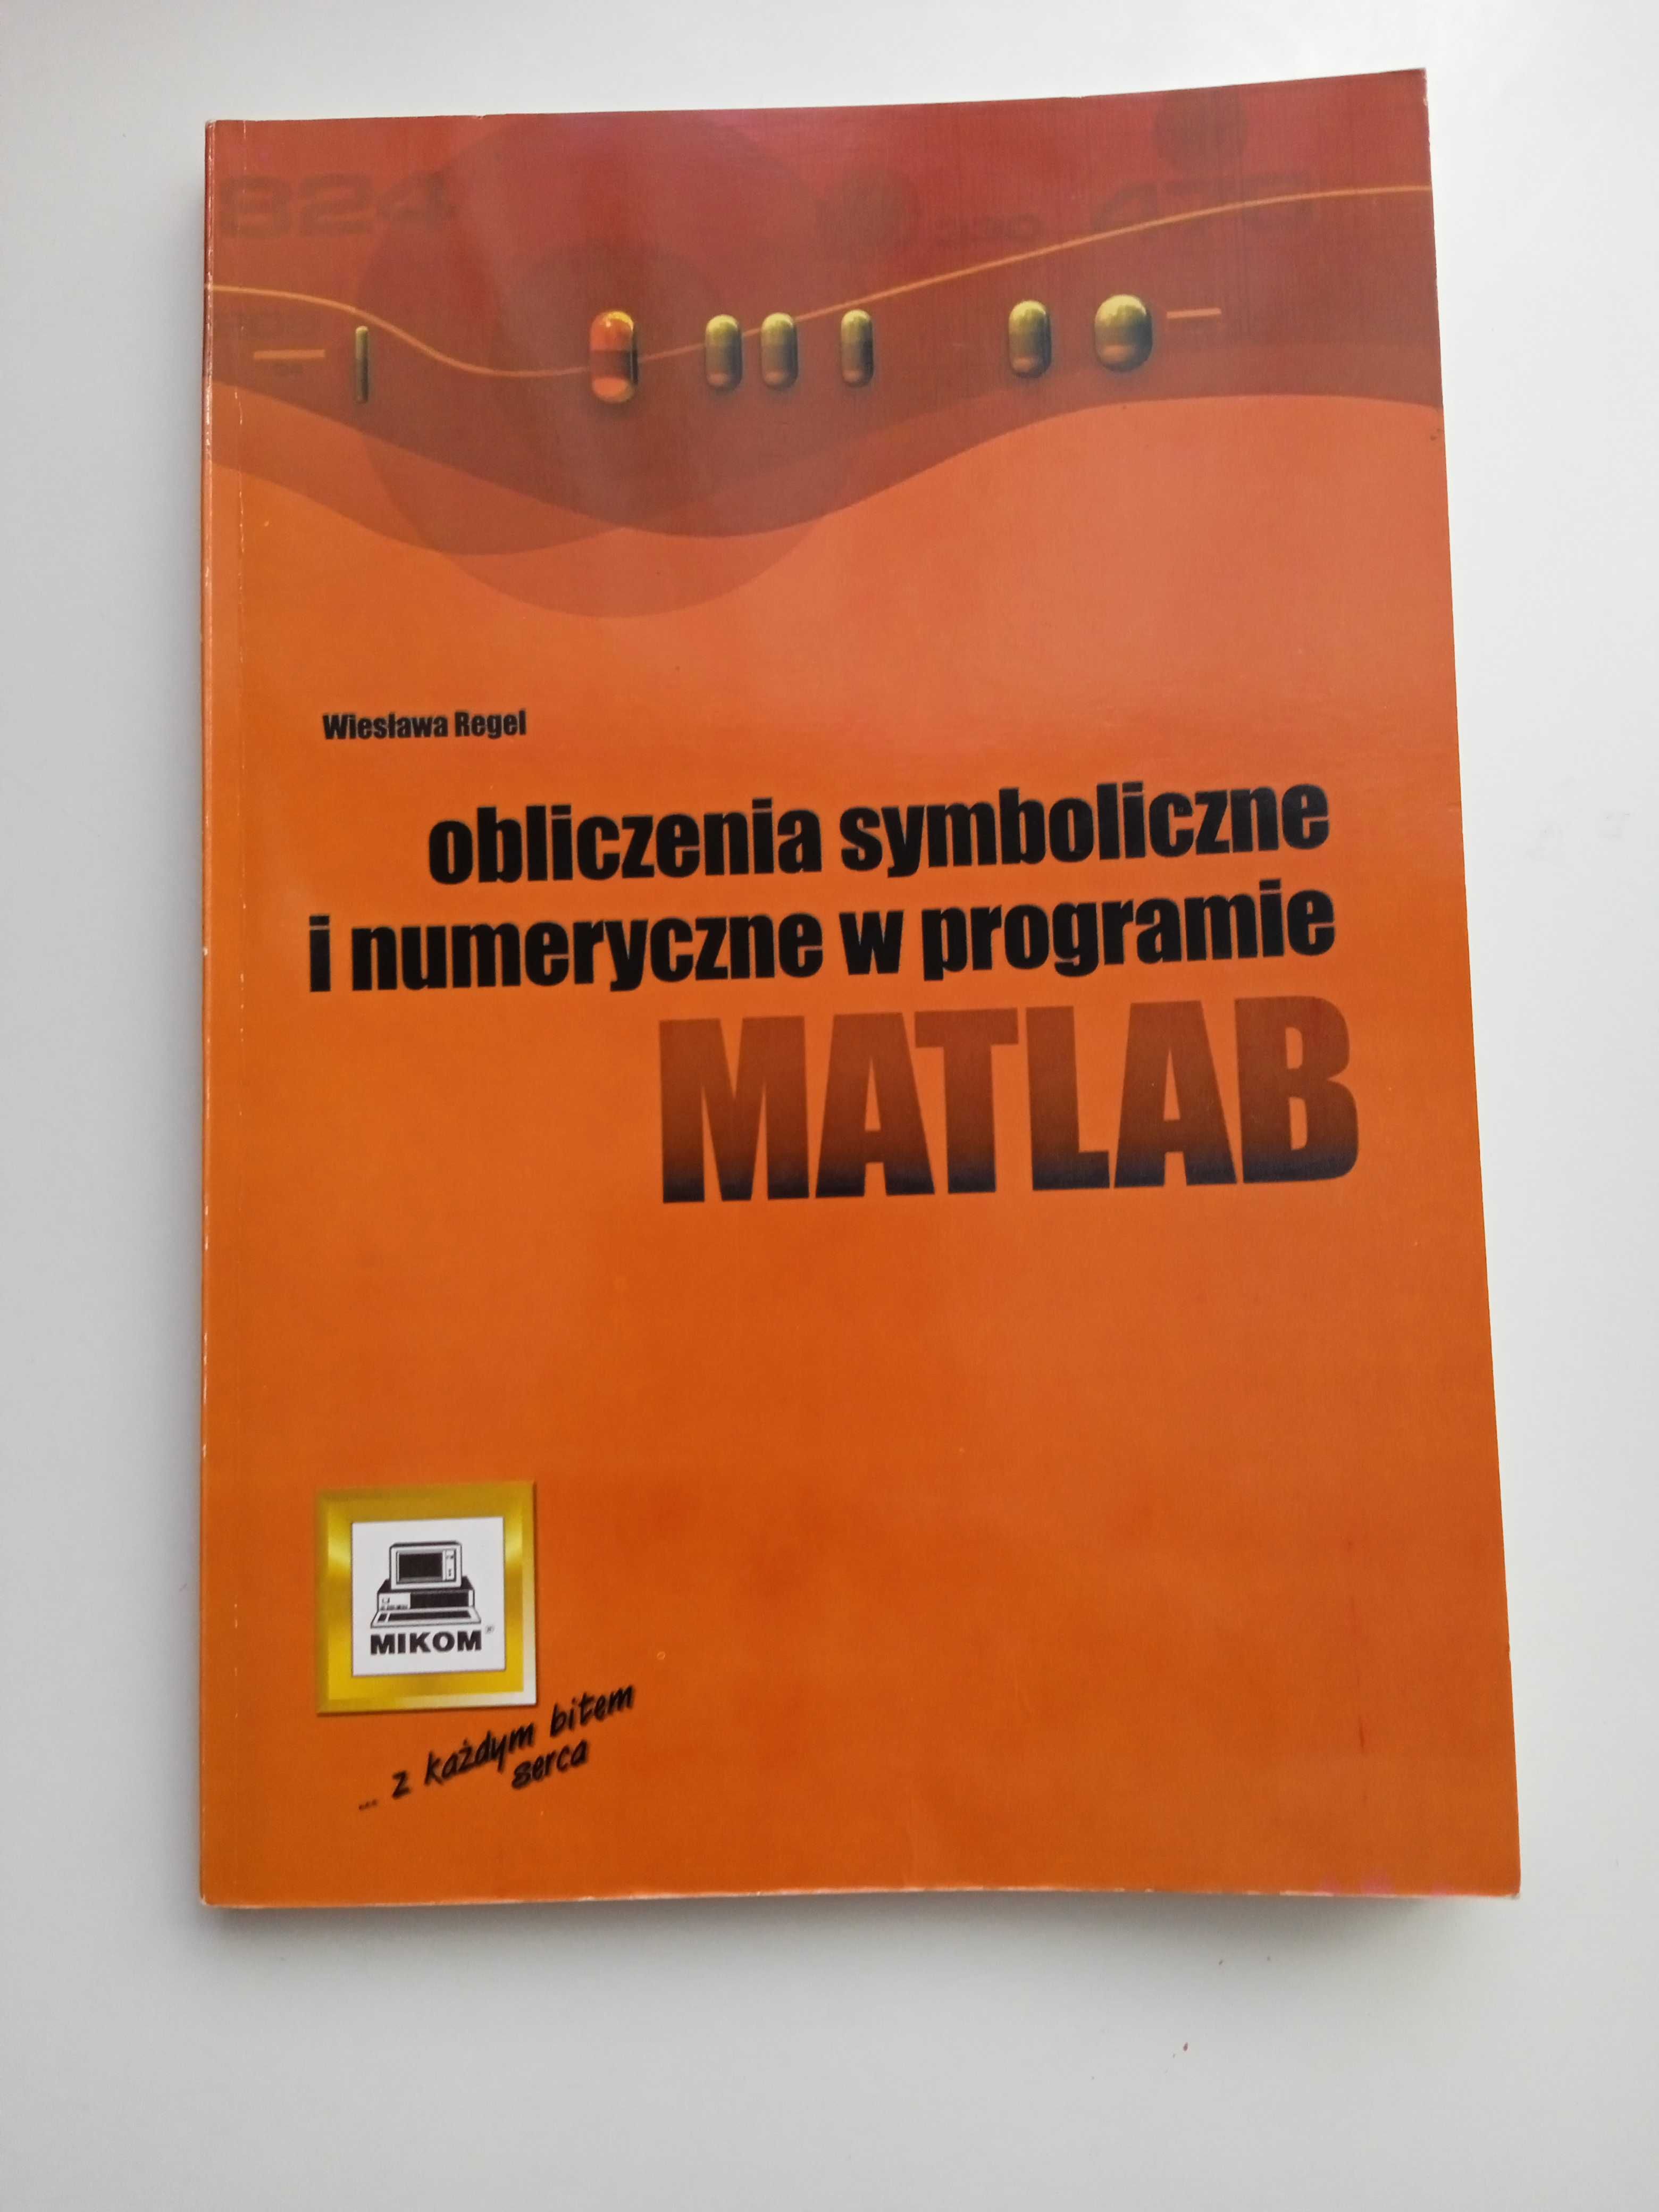 Książka Matlab obliczenia numeryczne i symboliczne Regel